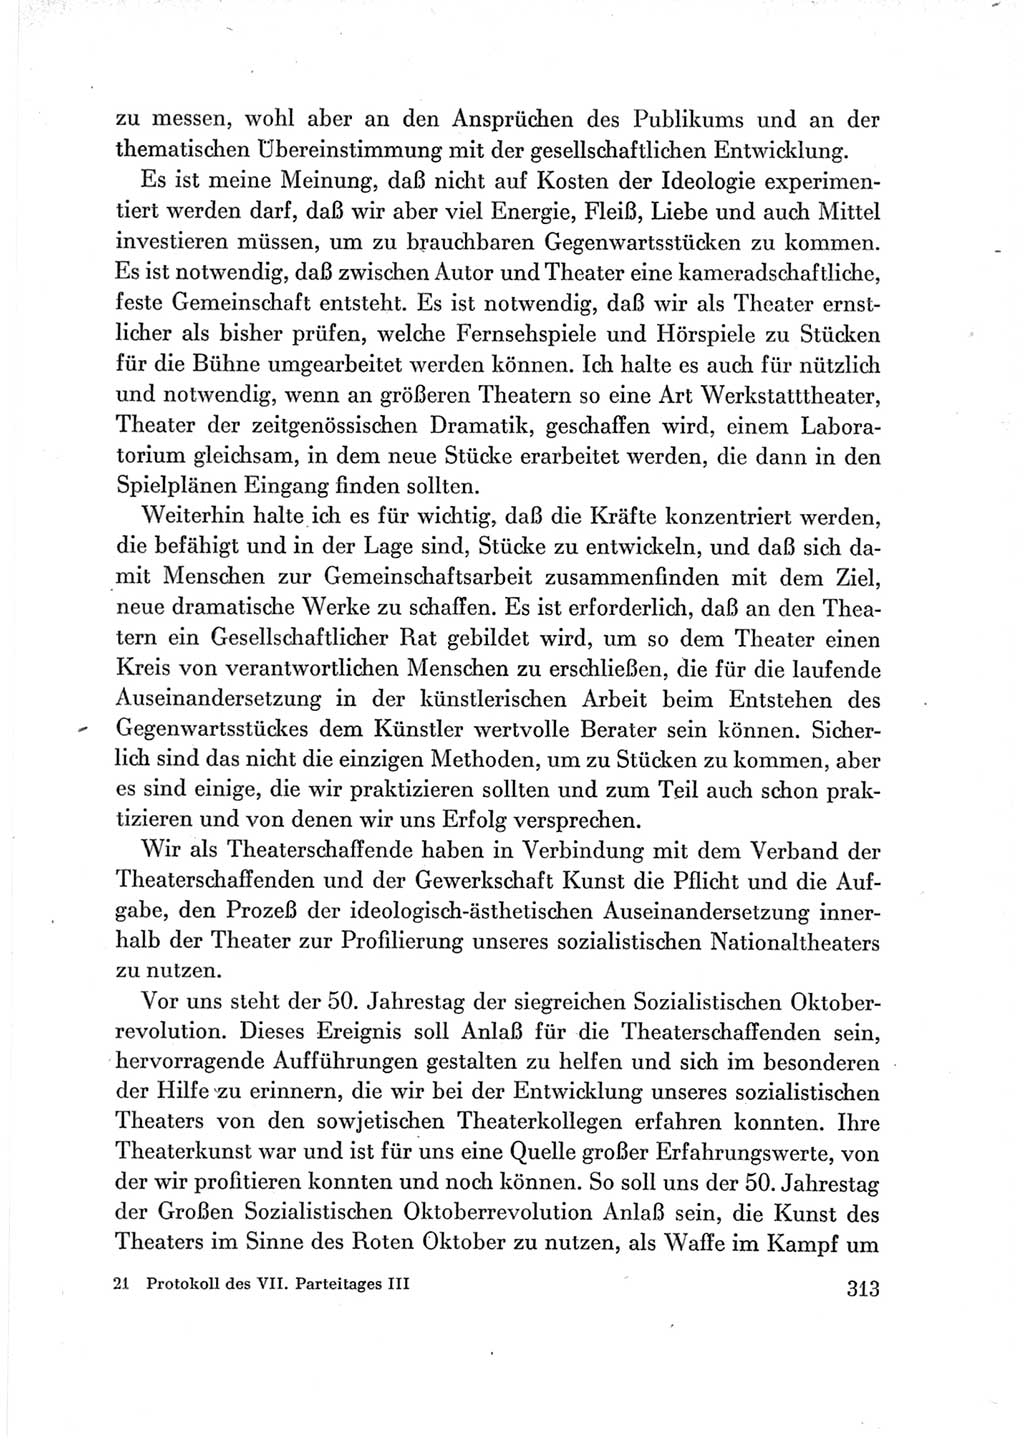 Protokoll der Verhandlungen des Ⅶ. Parteitages der Sozialistischen Einheitspartei Deutschlands (SED) [Deutsche Demokratische Republik (DDR)] 1967, Band Ⅲ, Seite 313 (Prot. Verh. Ⅶ. PT SED DDR 1967, Bd. Ⅲ, S. 313)